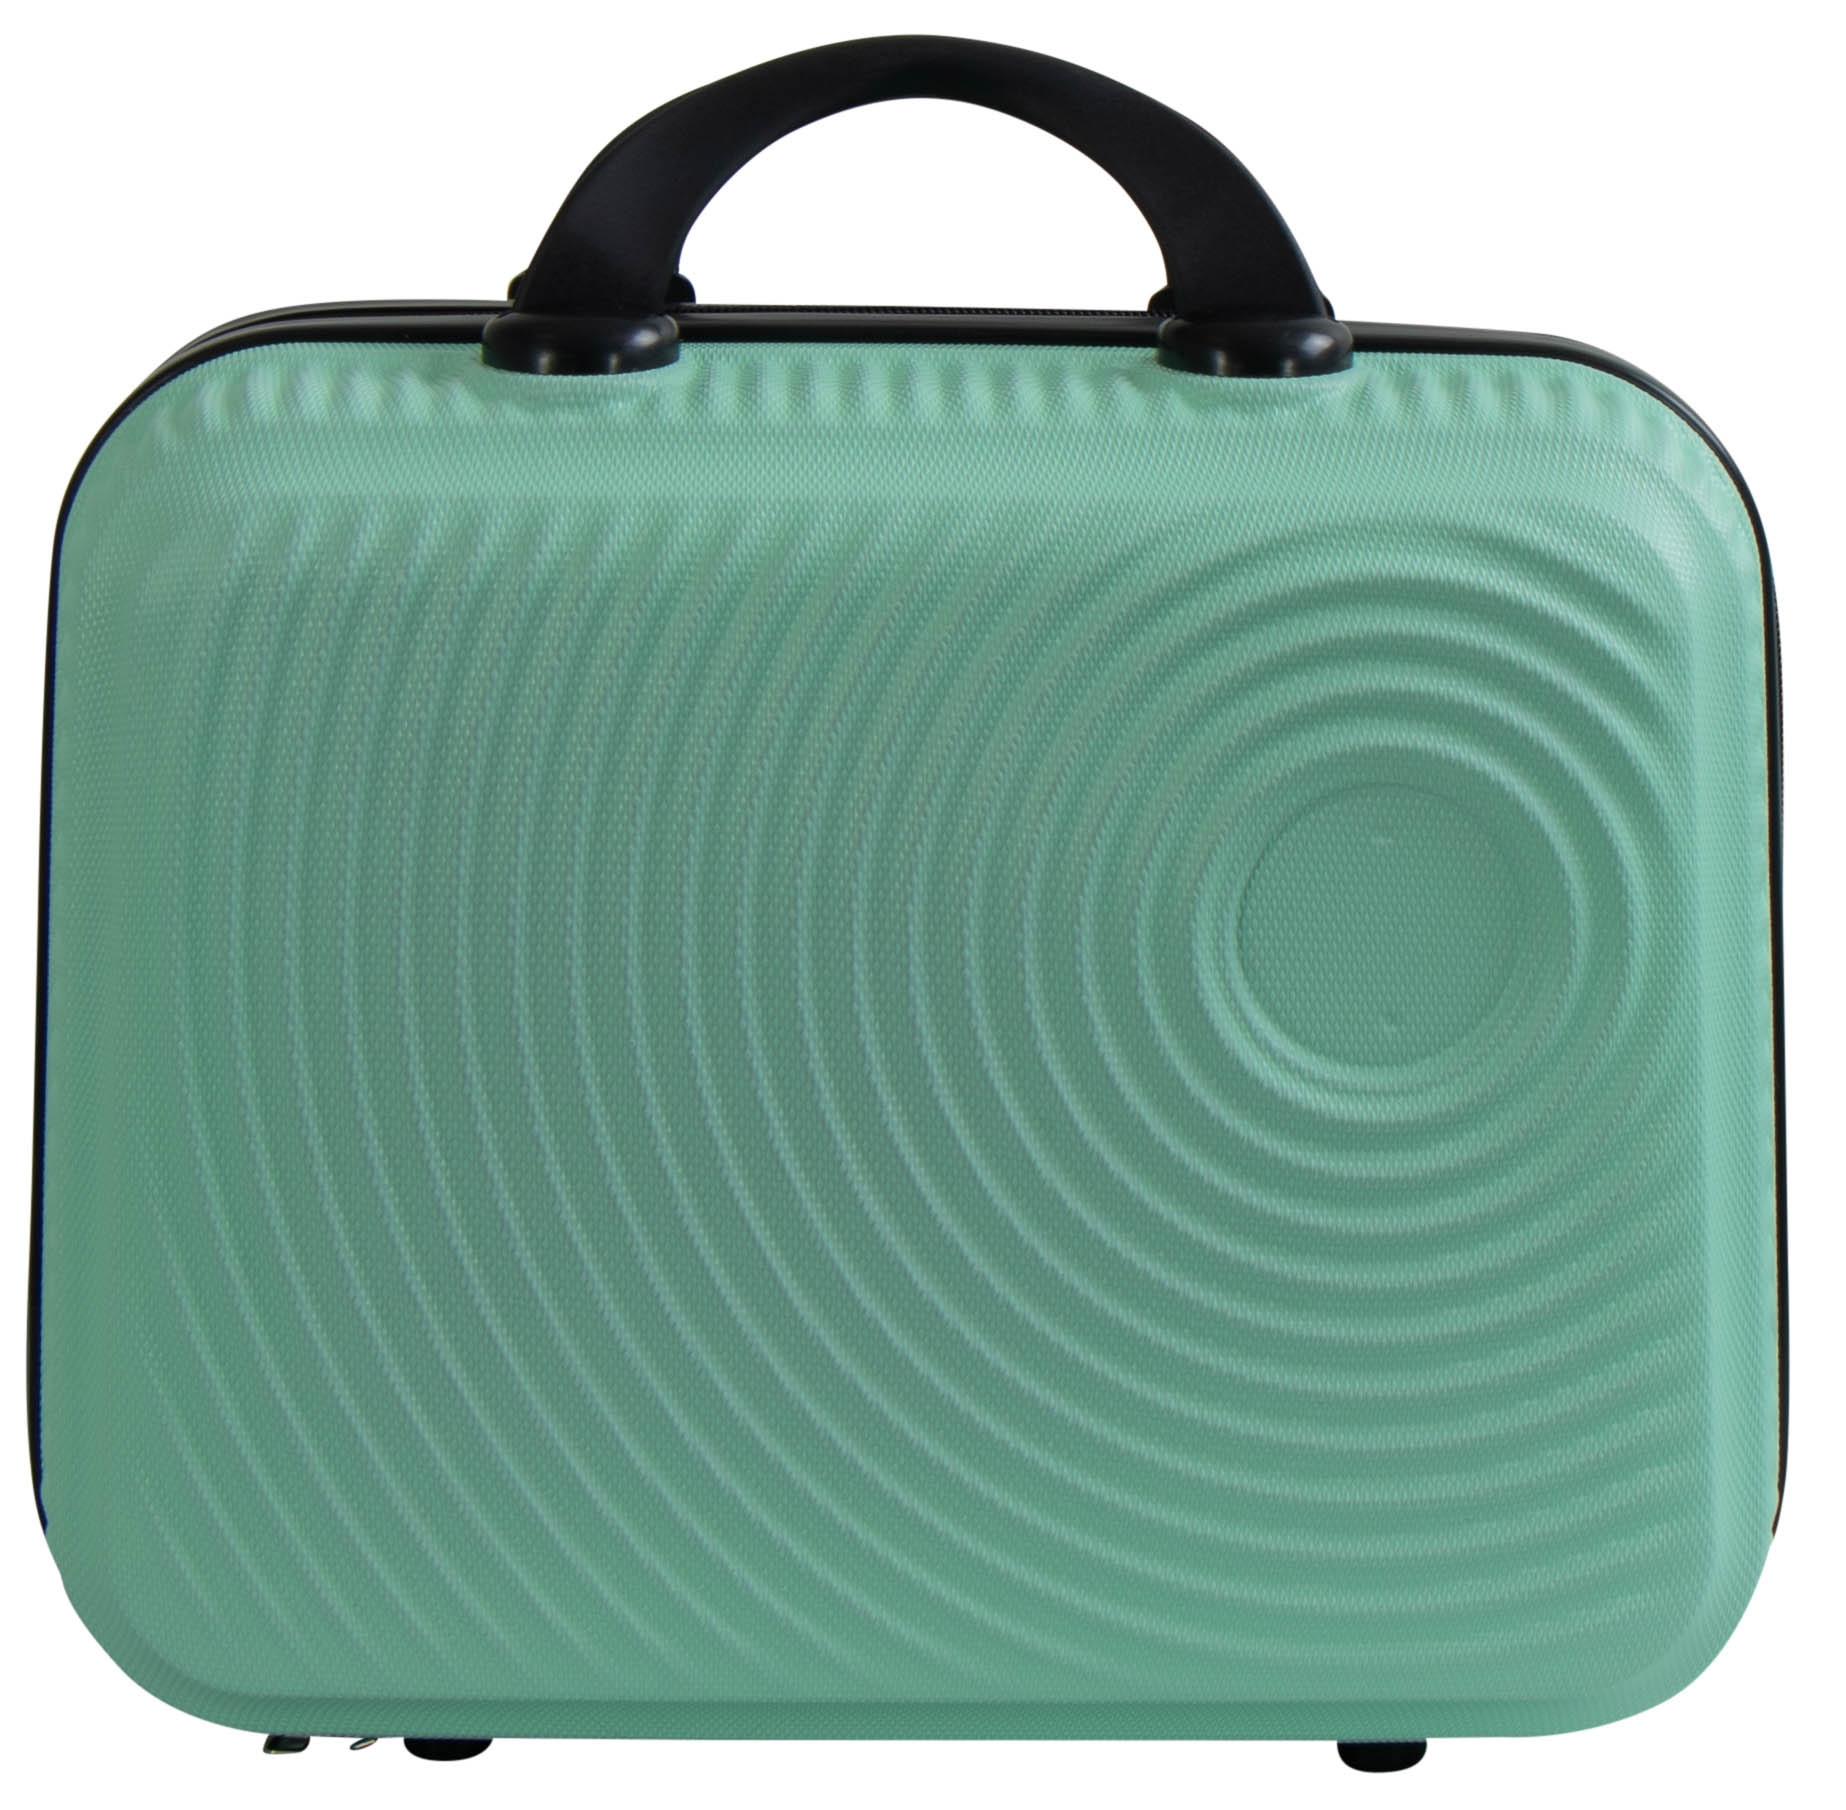 Kabine • Lille håndbagage taske • Pastel grøn